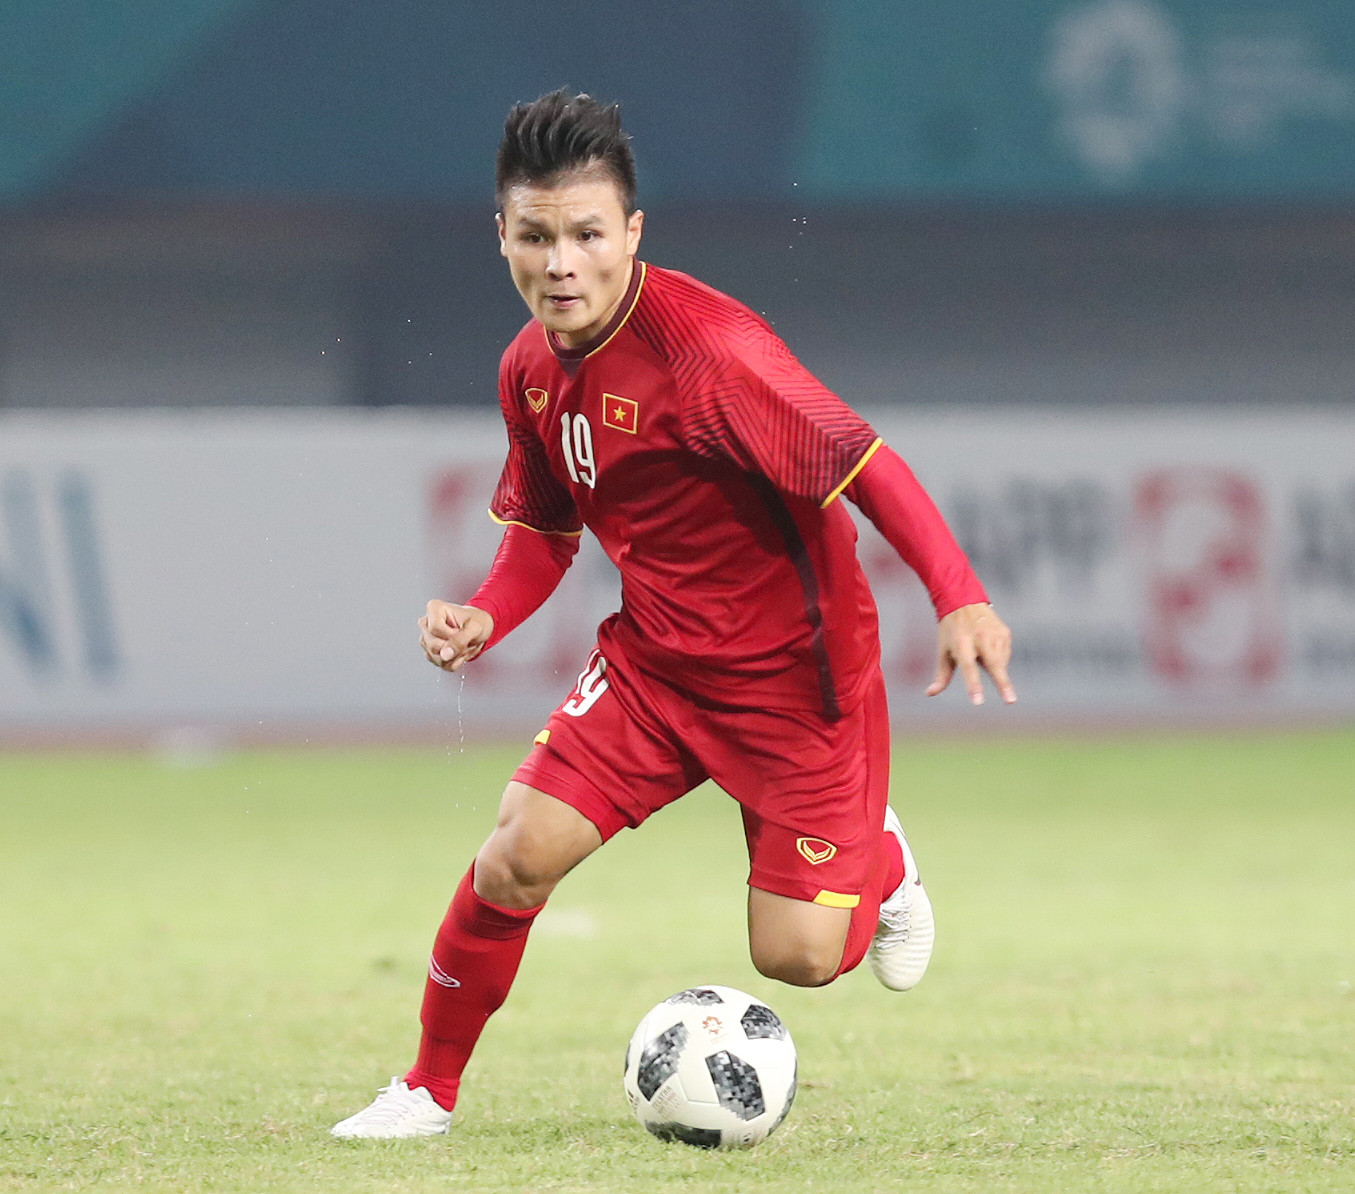 Cầu thủ Quang Hải sẽ cùng SHB đón cúp ngoại hạng Anh và cúp liên đoàn Anh.